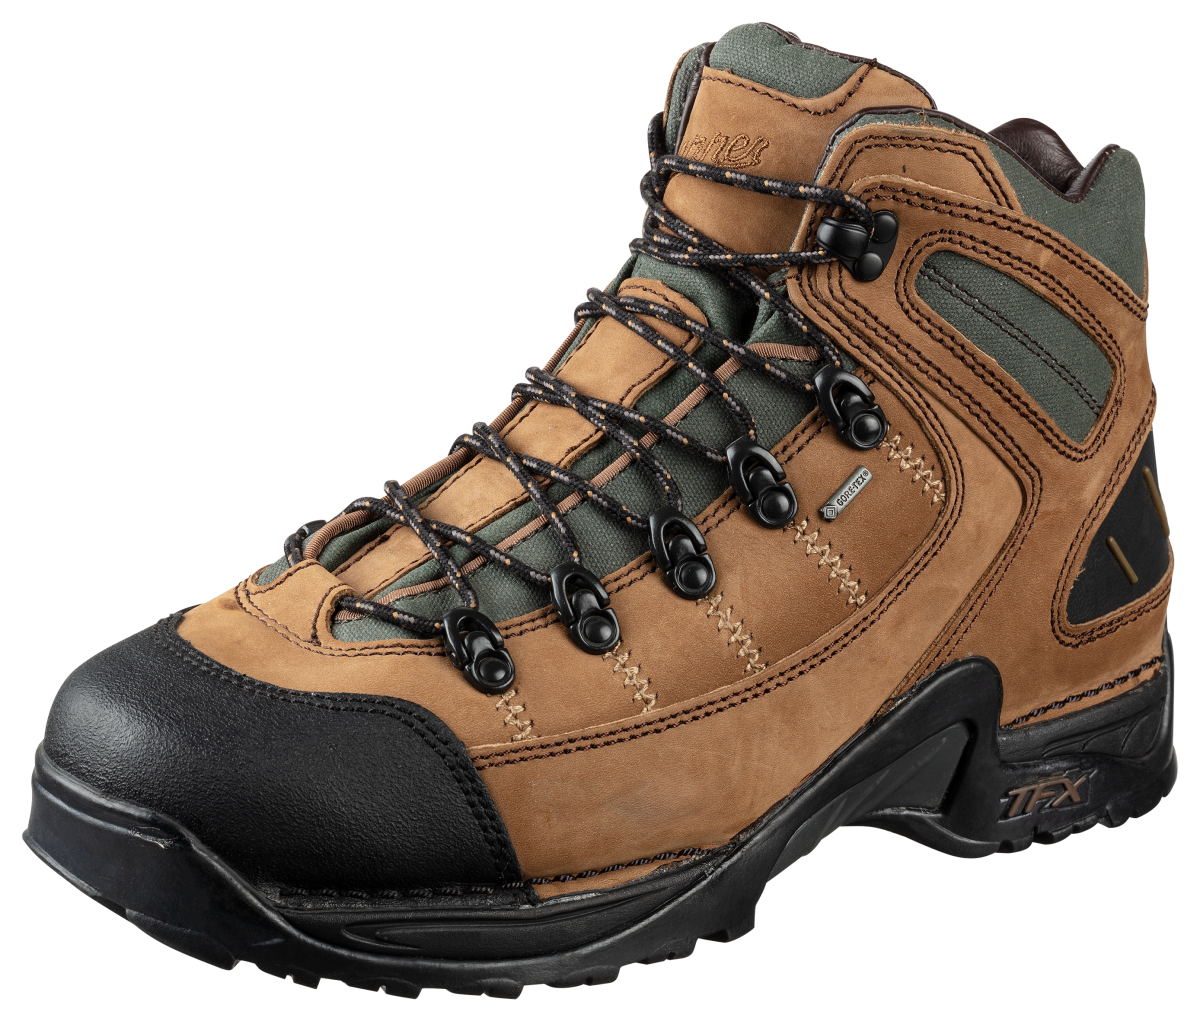 Danner 453 GORE-TEX Waterproof Hiking Boots for Men - Dark Tan - 11W